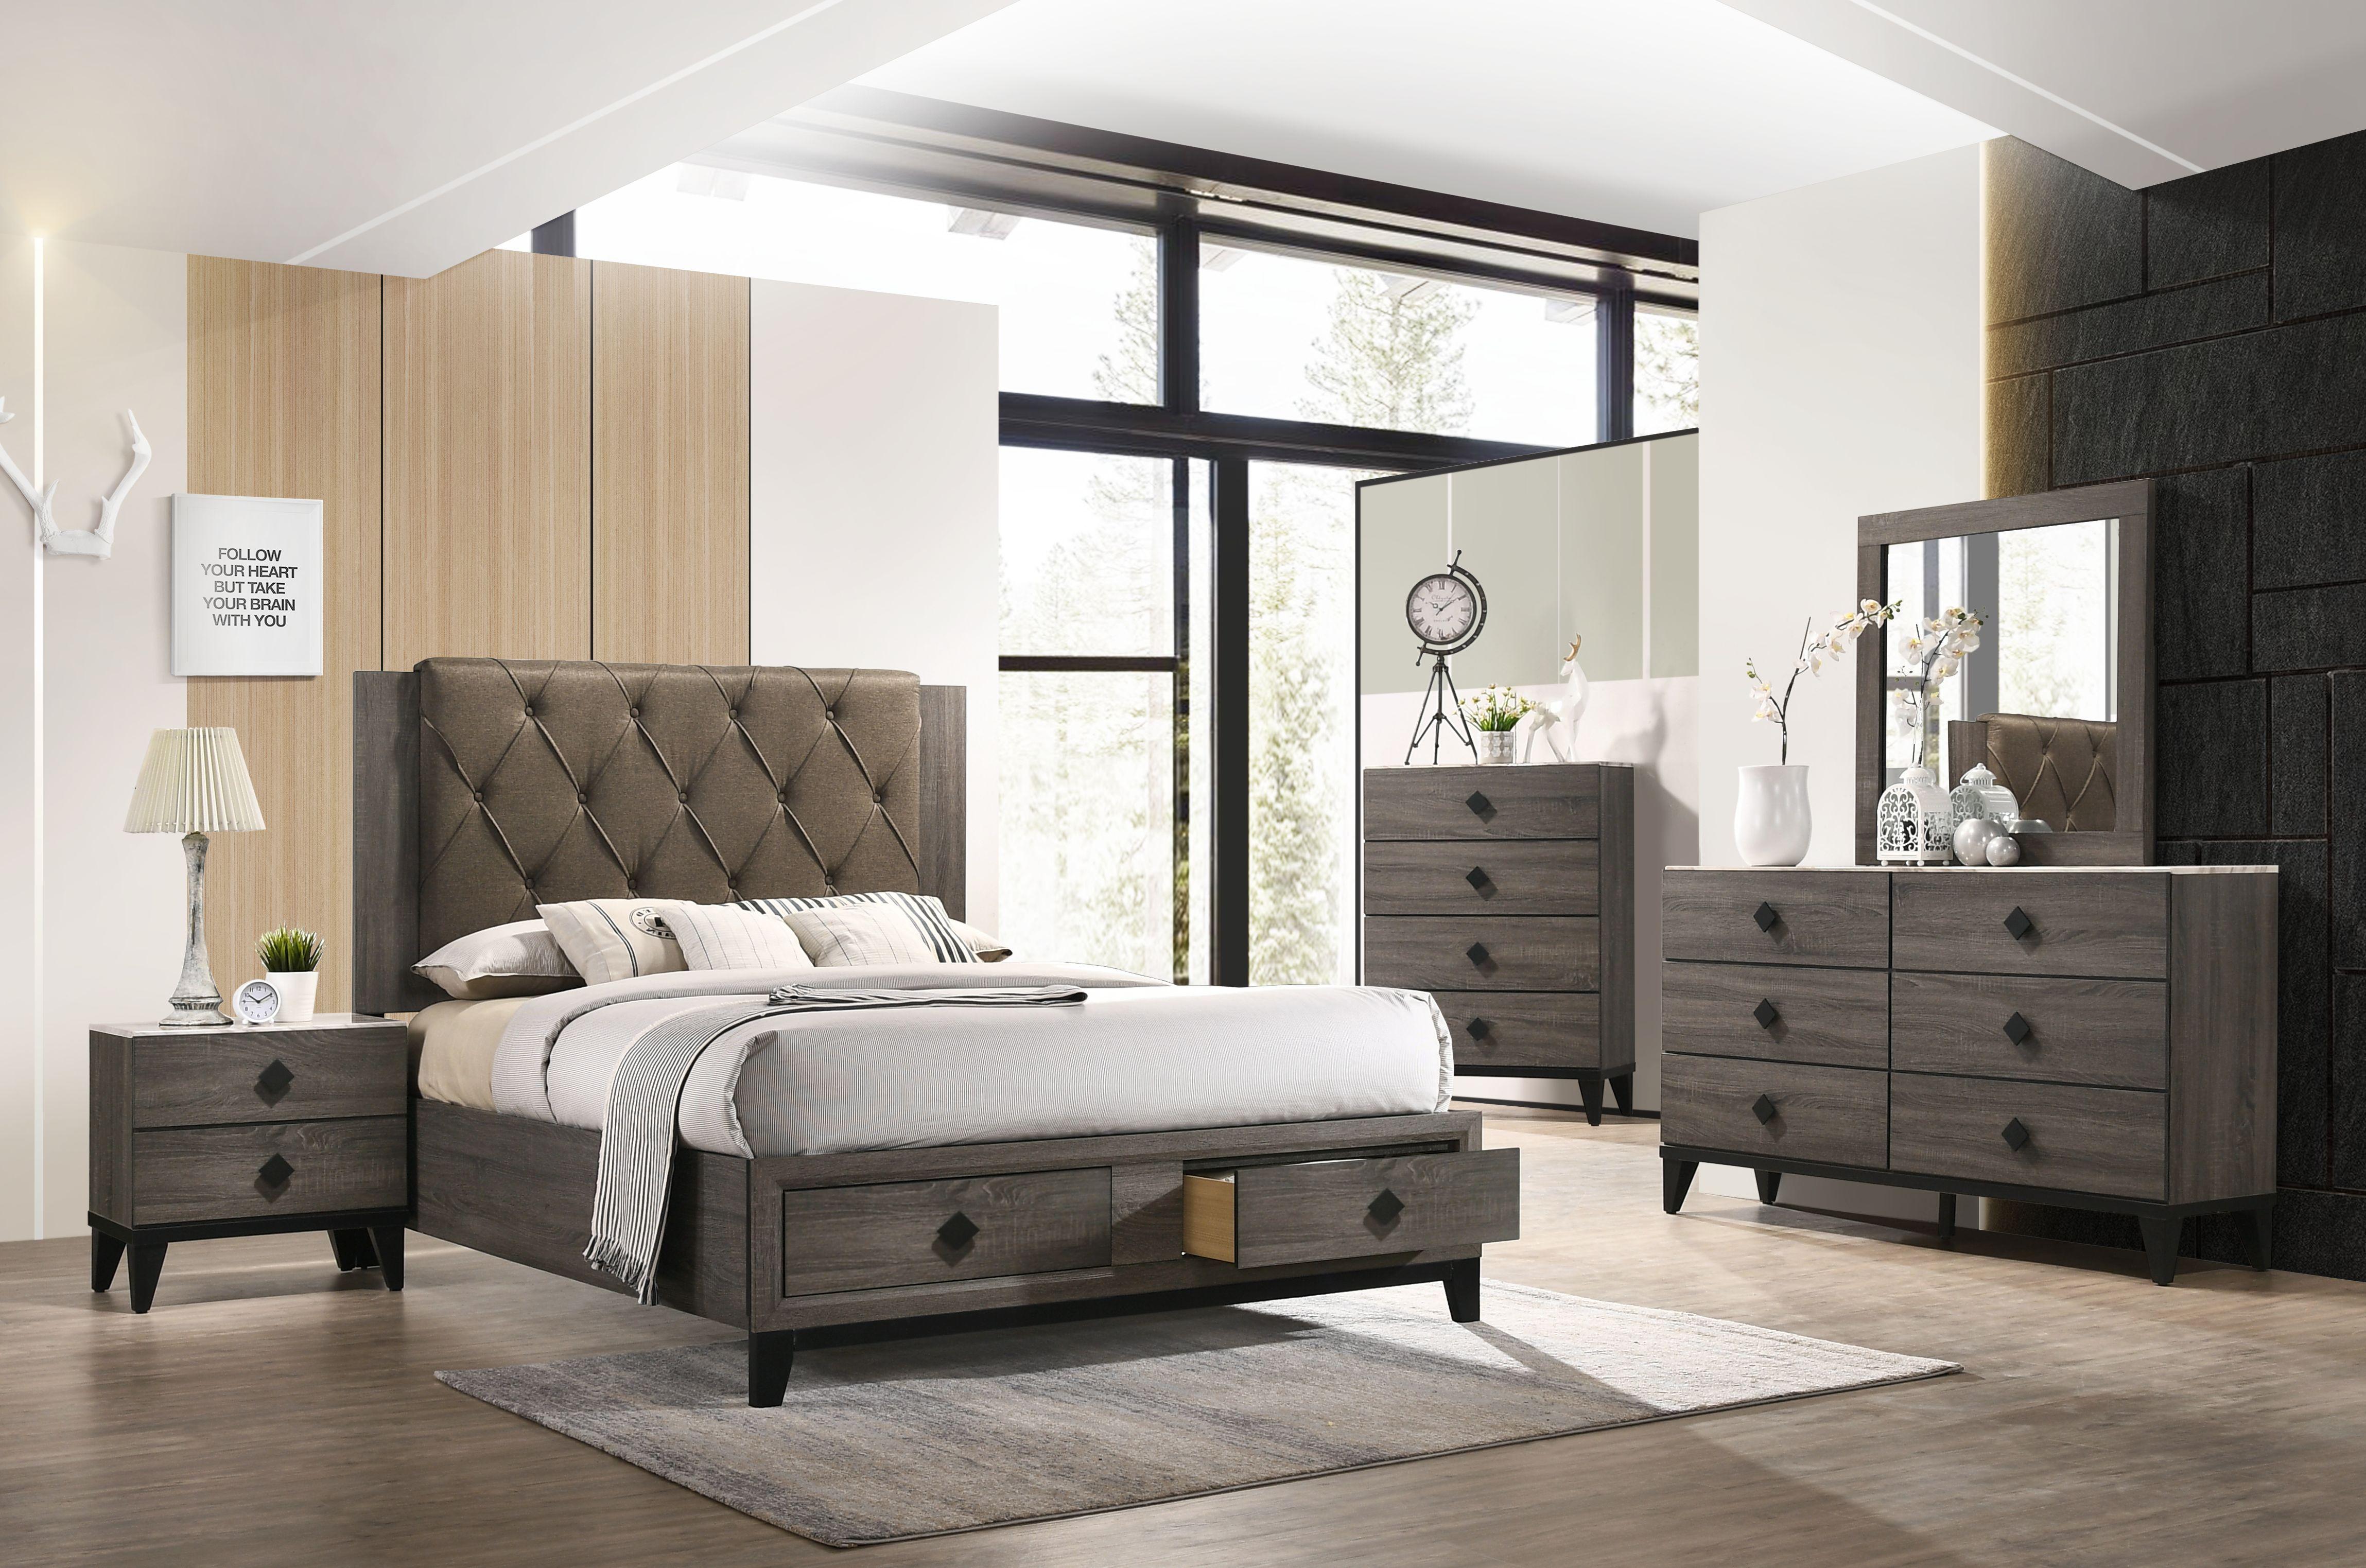 

    
Transitional Fabric & Rustic Gray Oak Queen Bedroom Set 6PCS by Acme Avantika-27670Q-S
